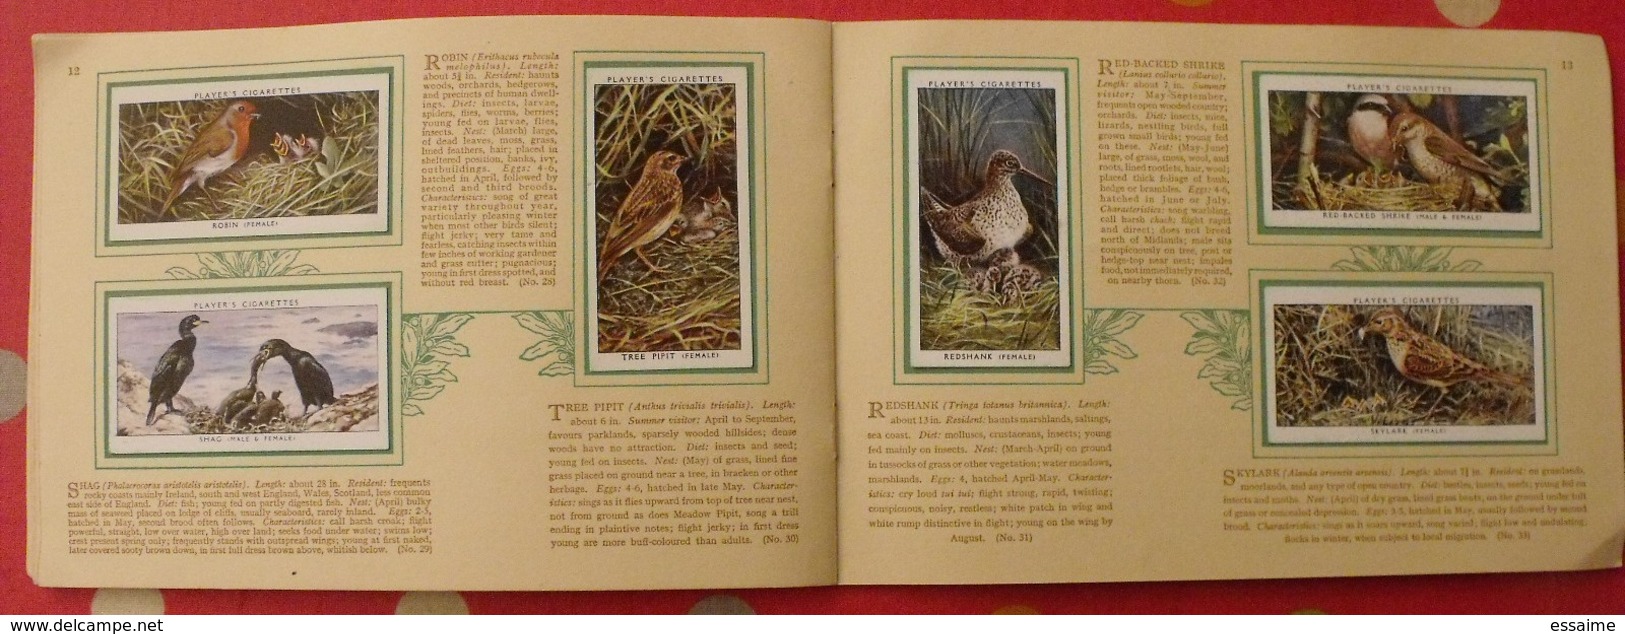 album d'images cigarette pictures card john player. en anglais. birds & young, oiseaux & petits. 1935. 50 chromo